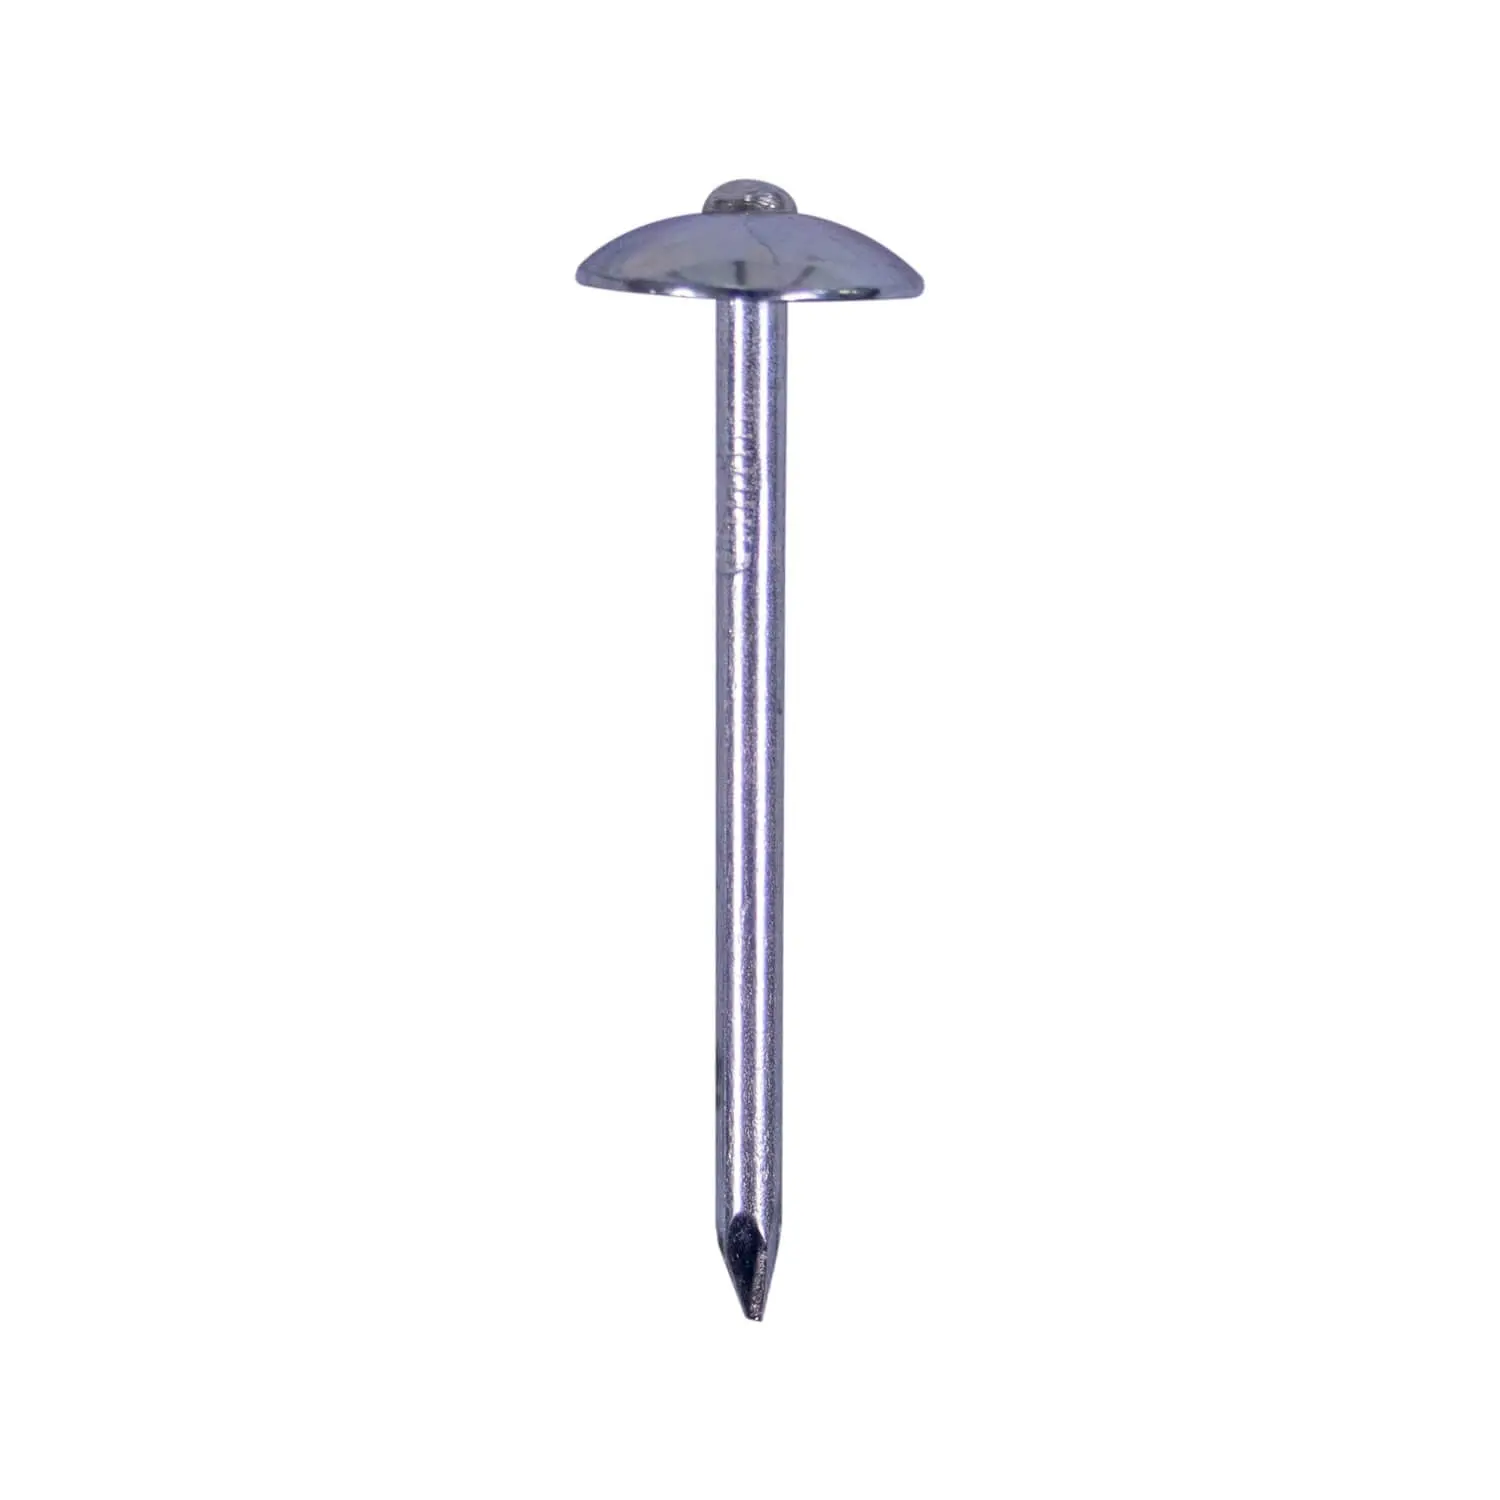 Cabeça de guarda-chuva galvanizada bwg9, 2.5 polegadas, unhas de cobertura